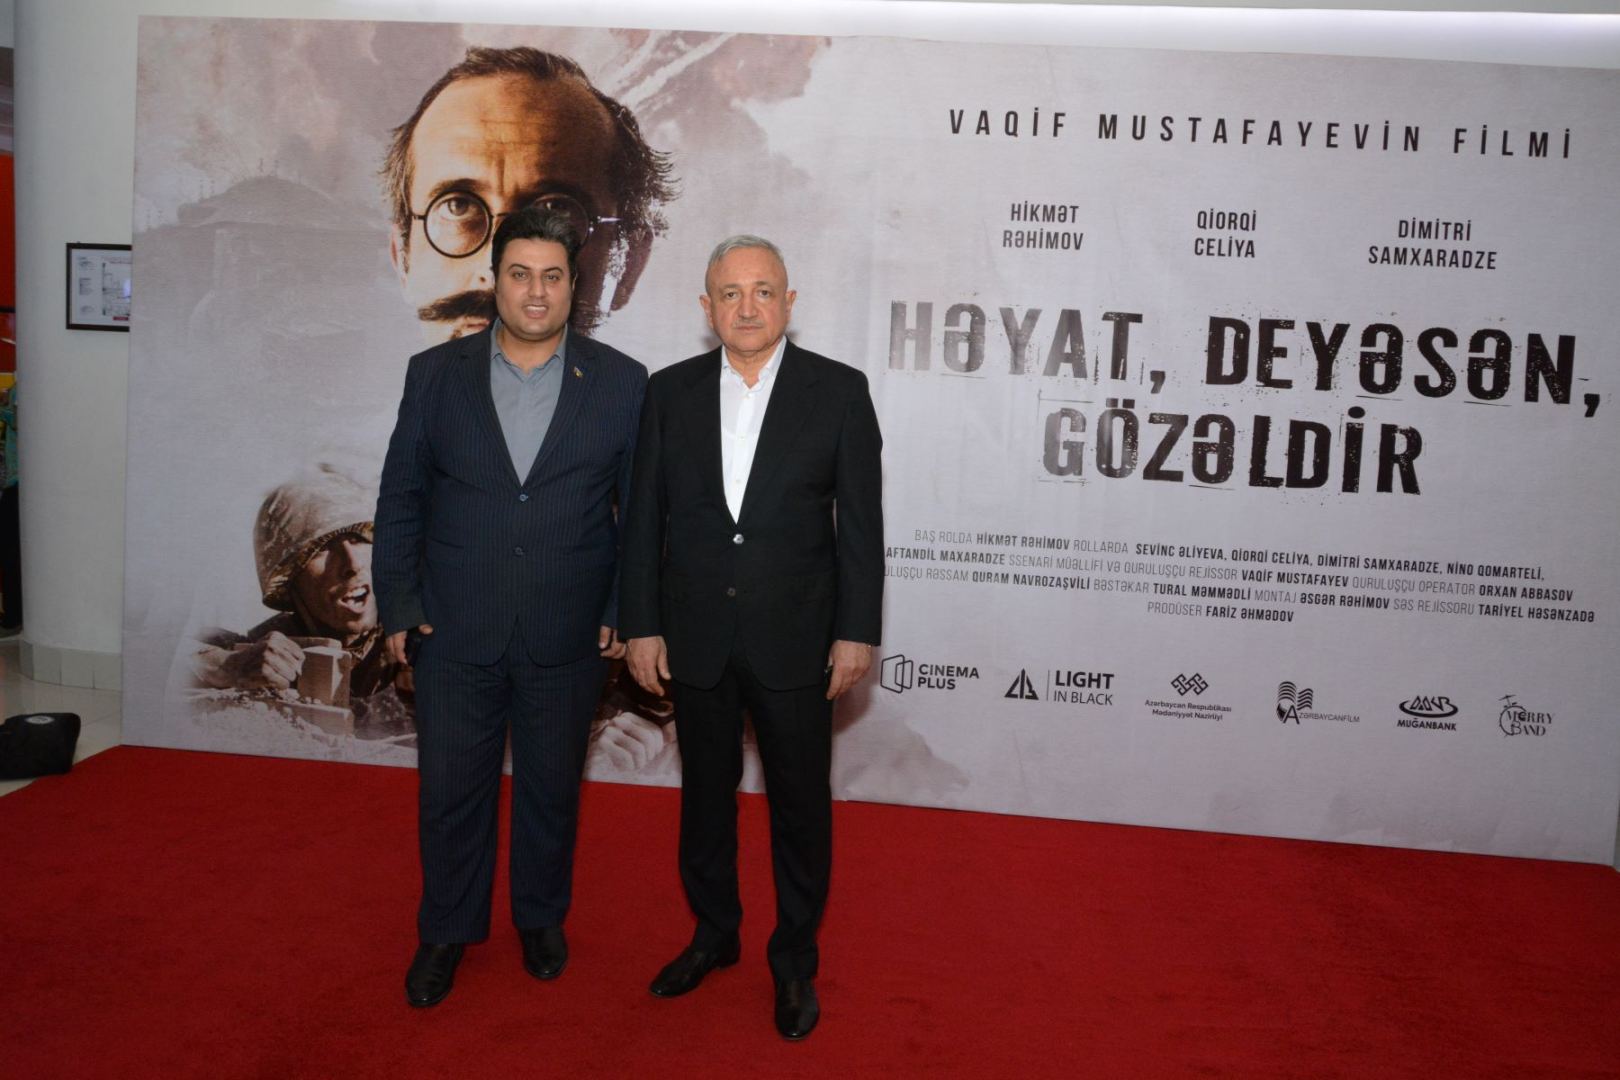 Аншлаг на показе фильма "Həyat, deyəsən, gözəldir" в CinemaPlus (ФОТО/ВИДЕО)